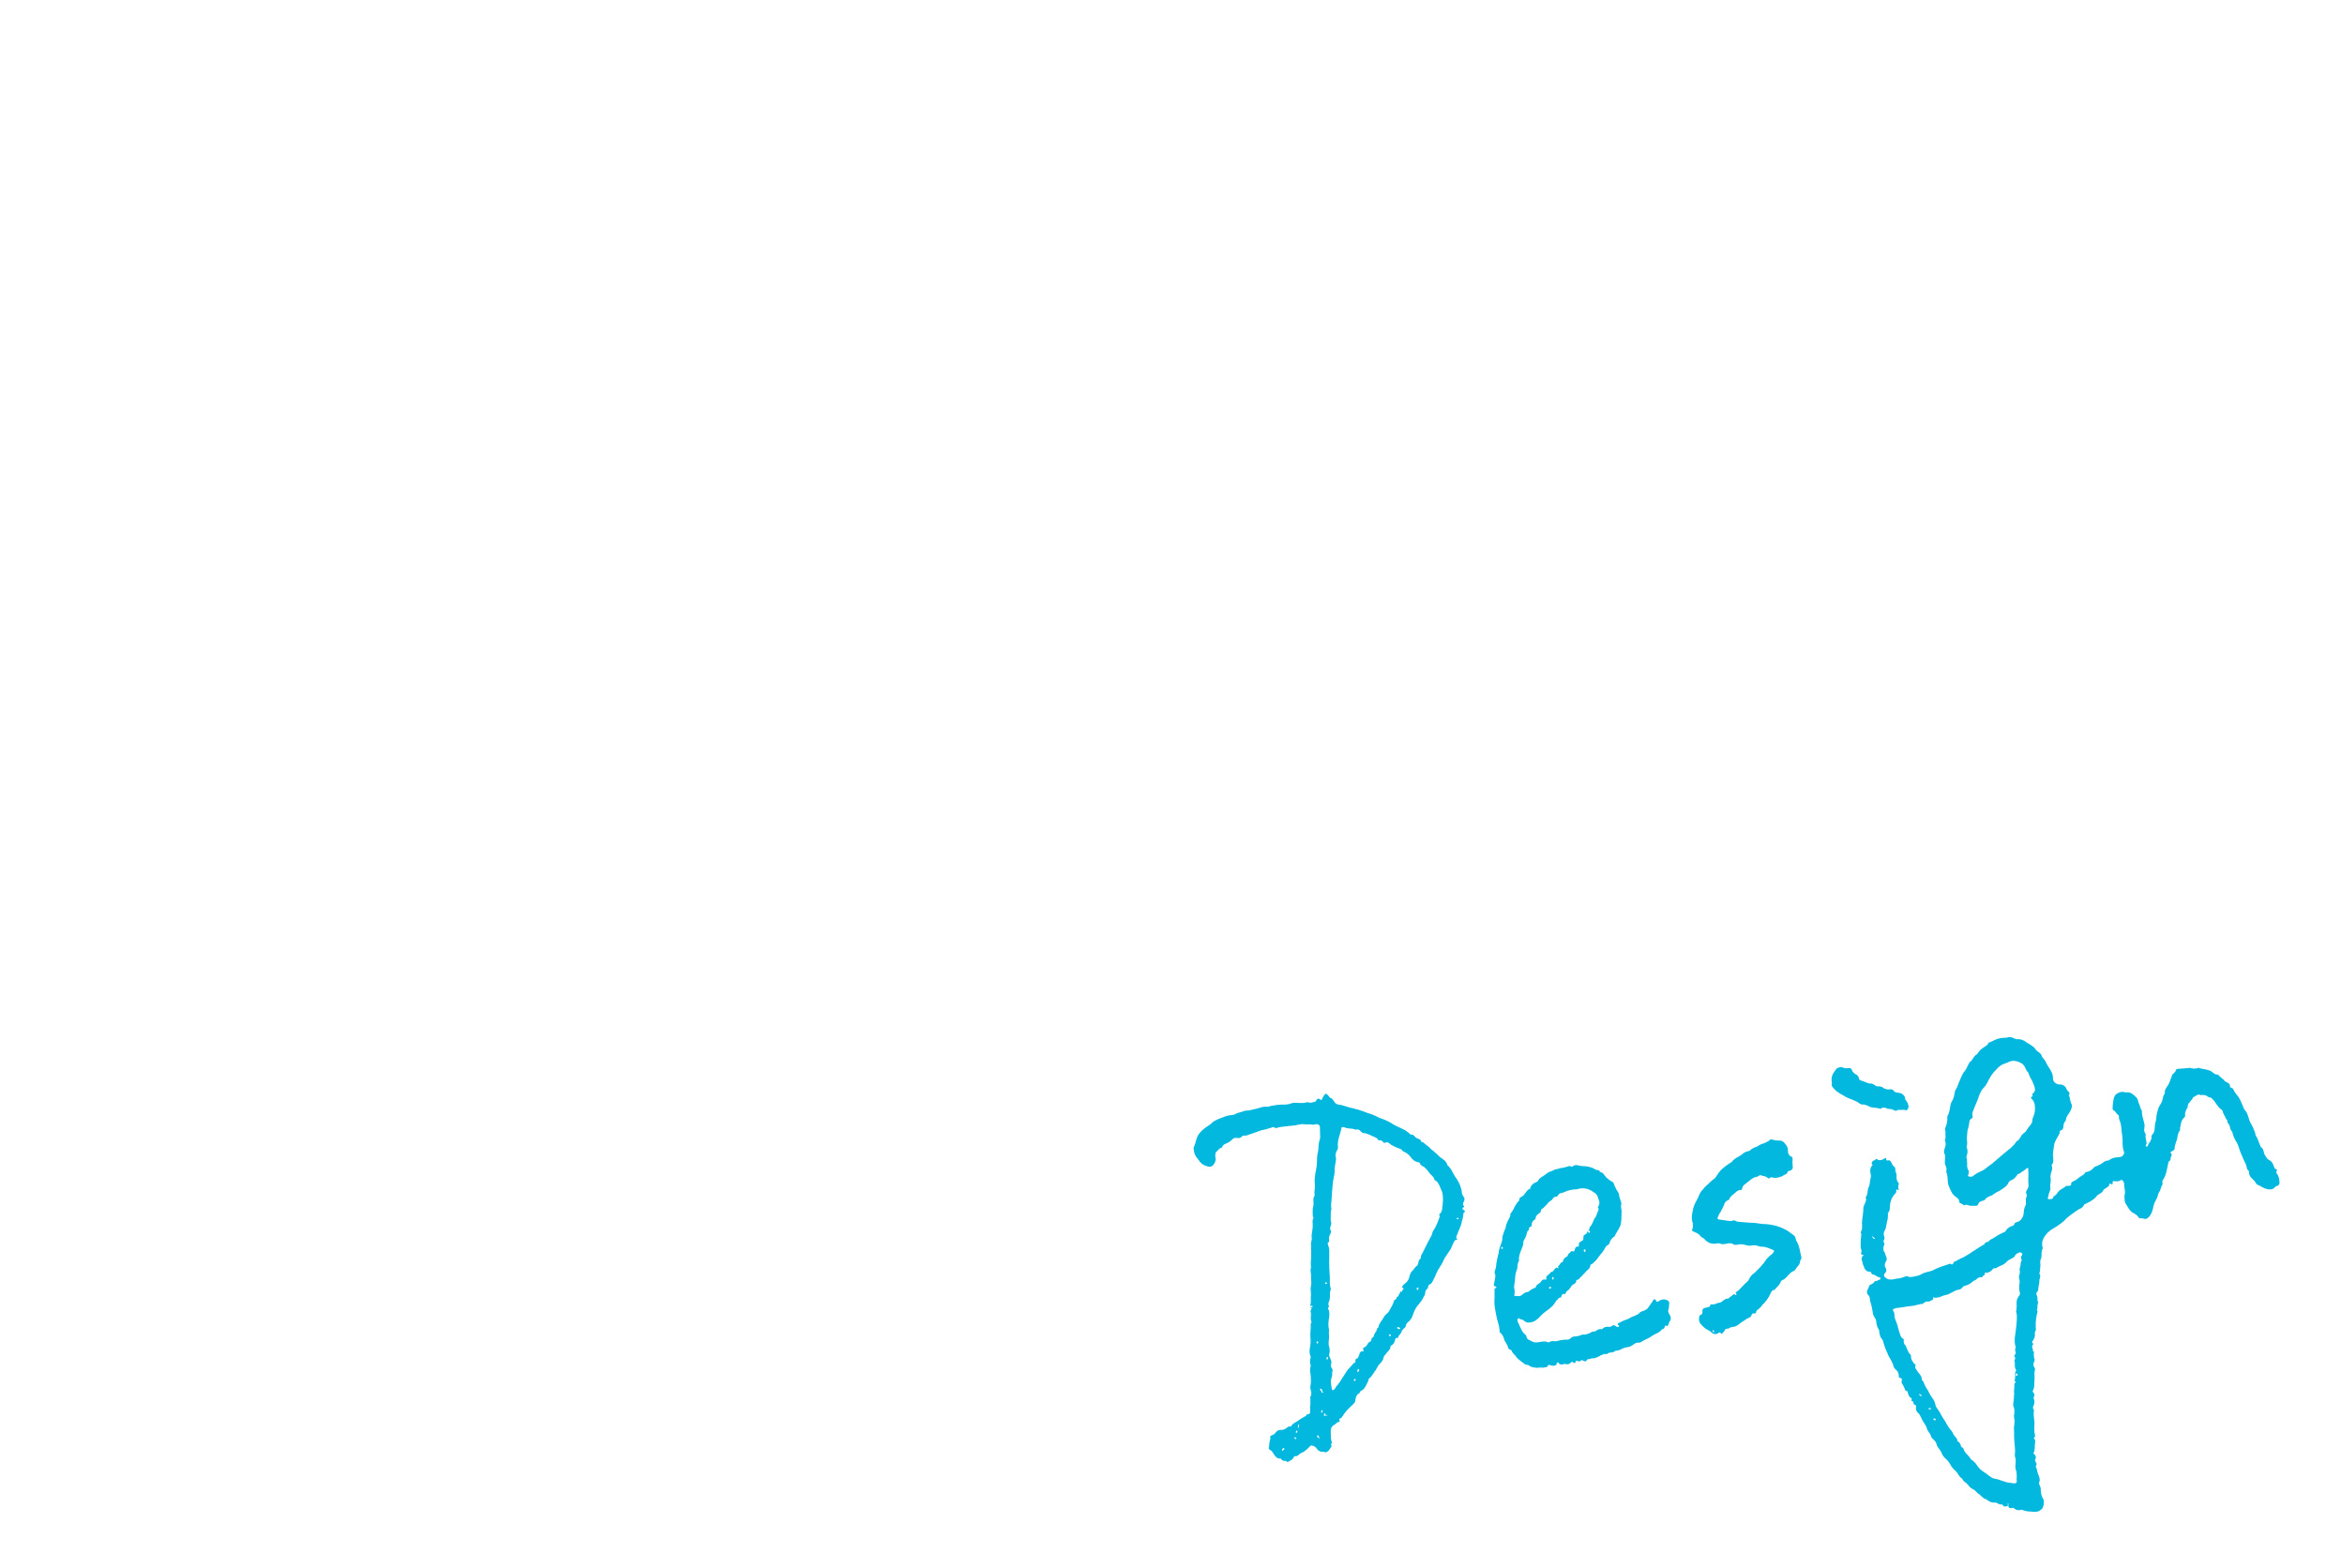 登壇者の手書きの「Design」の文字